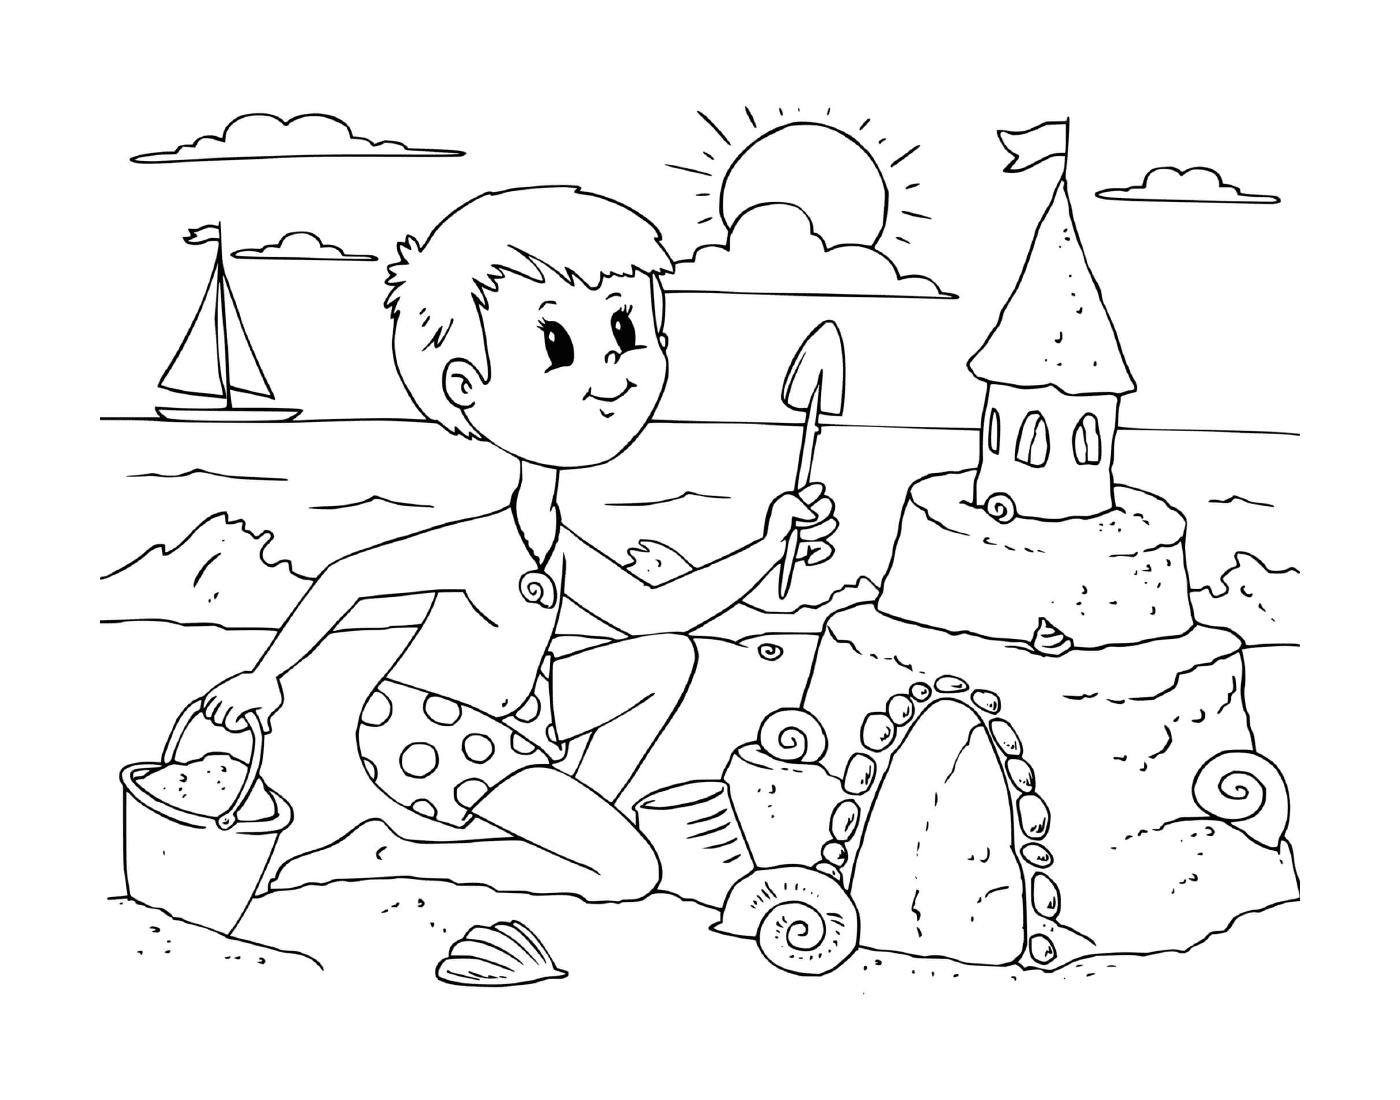  A boy builds a sand castle on the beach 